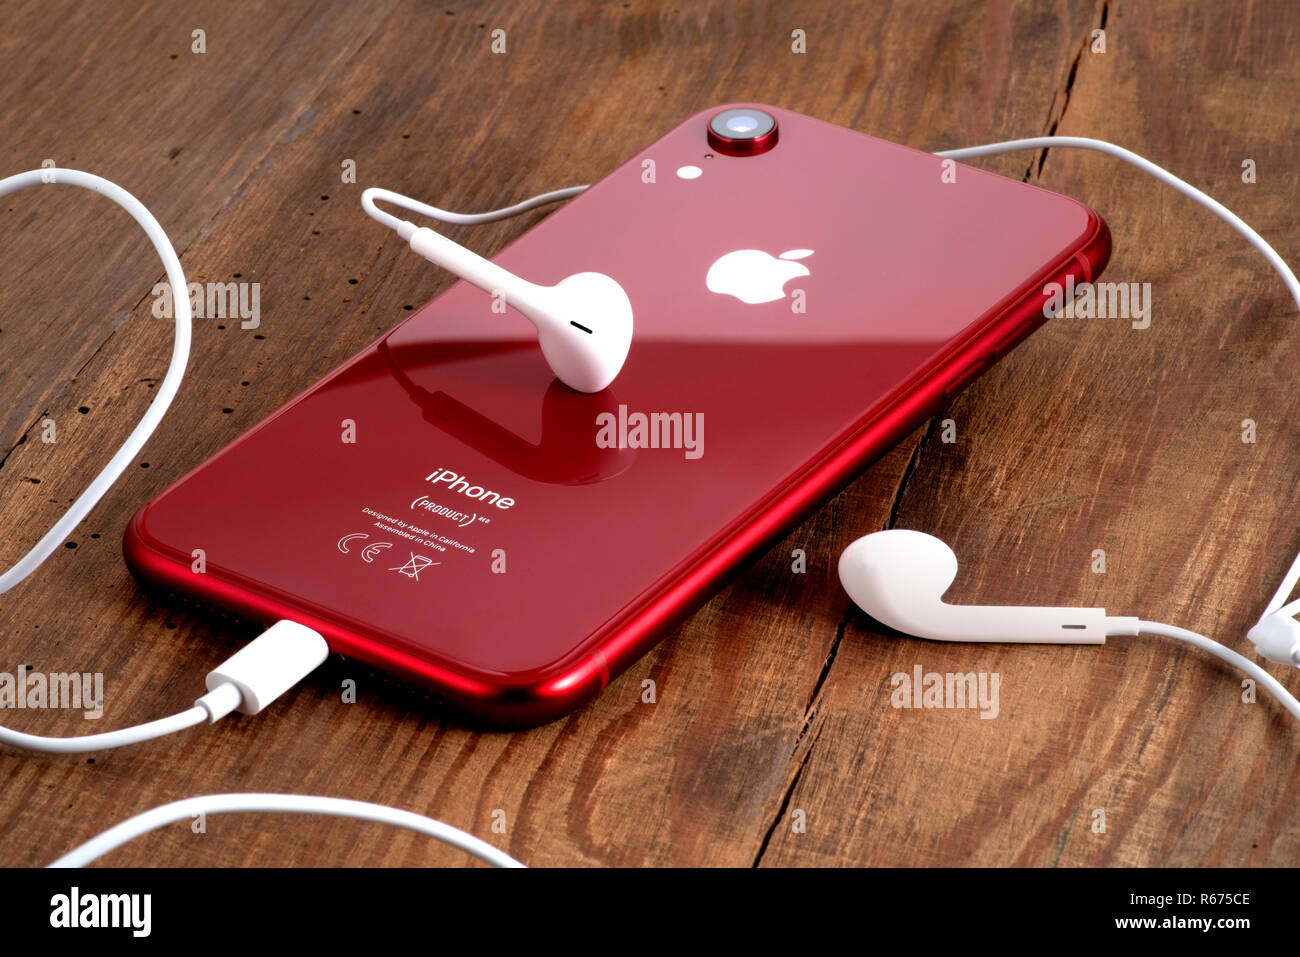 Koszalin, Polen - Dezember 04, 2018: Rot iPhone XR auf einem Holztisch mit weißen Ohrhörer. Das iPhone XR ist smart phone mit Multi touch screen Produ Stockfoto